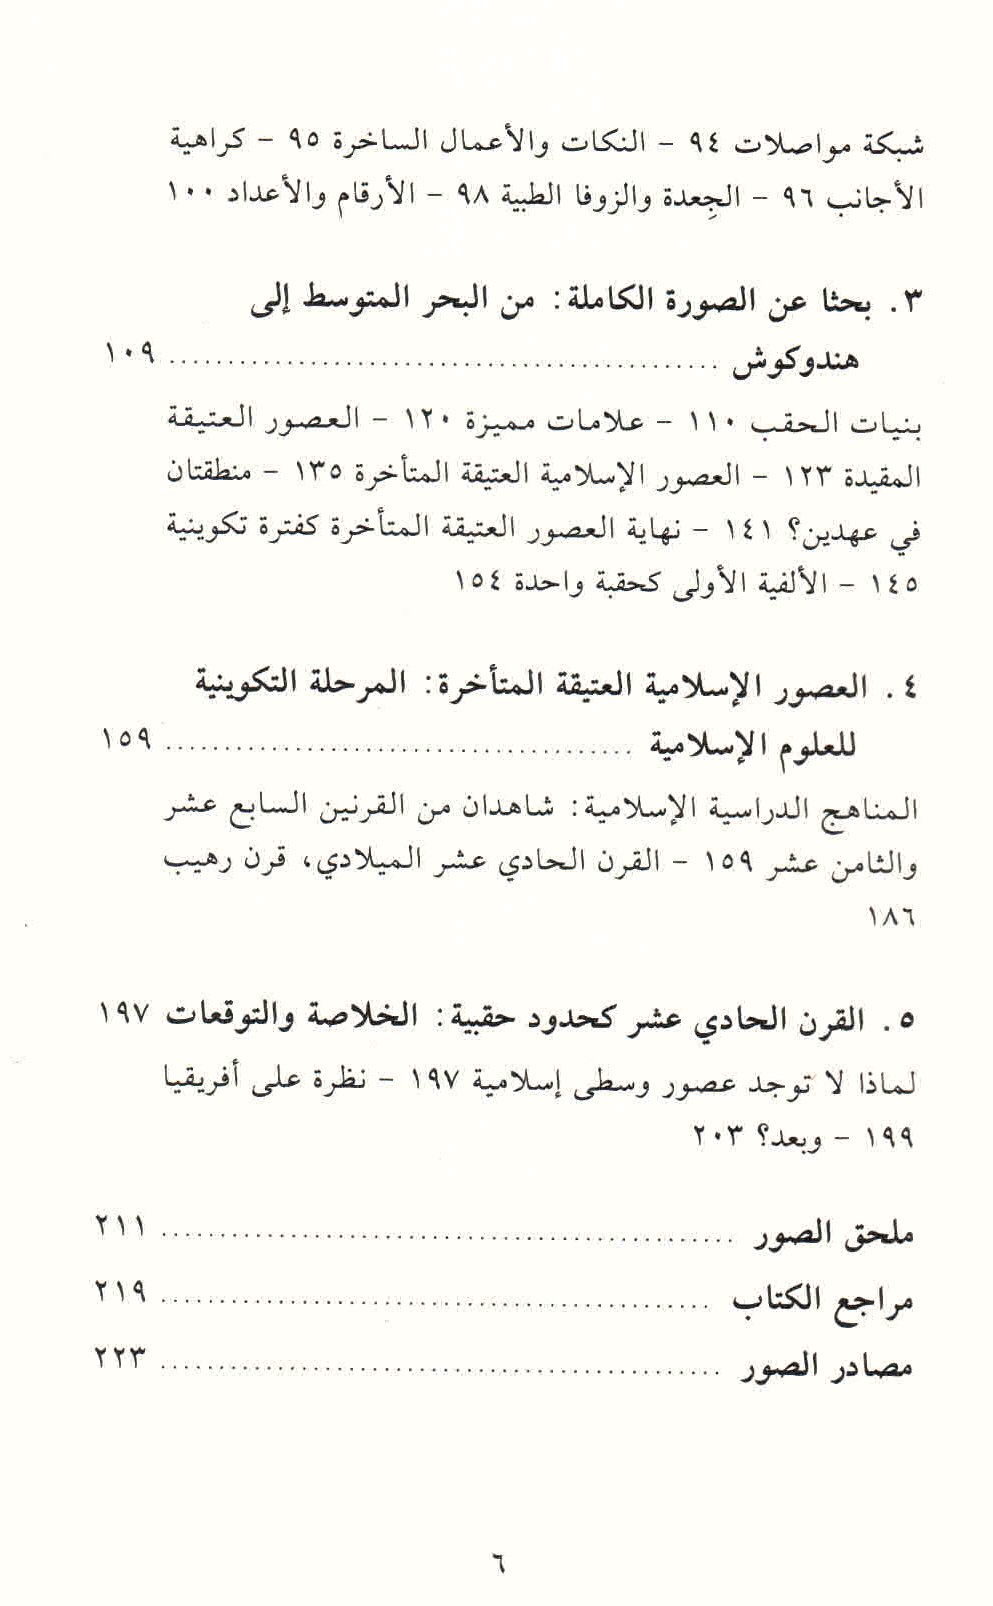 ص. 6 قائمة محتويات كتاب لماذا لم توجد عصور وسطى إسلامية؟